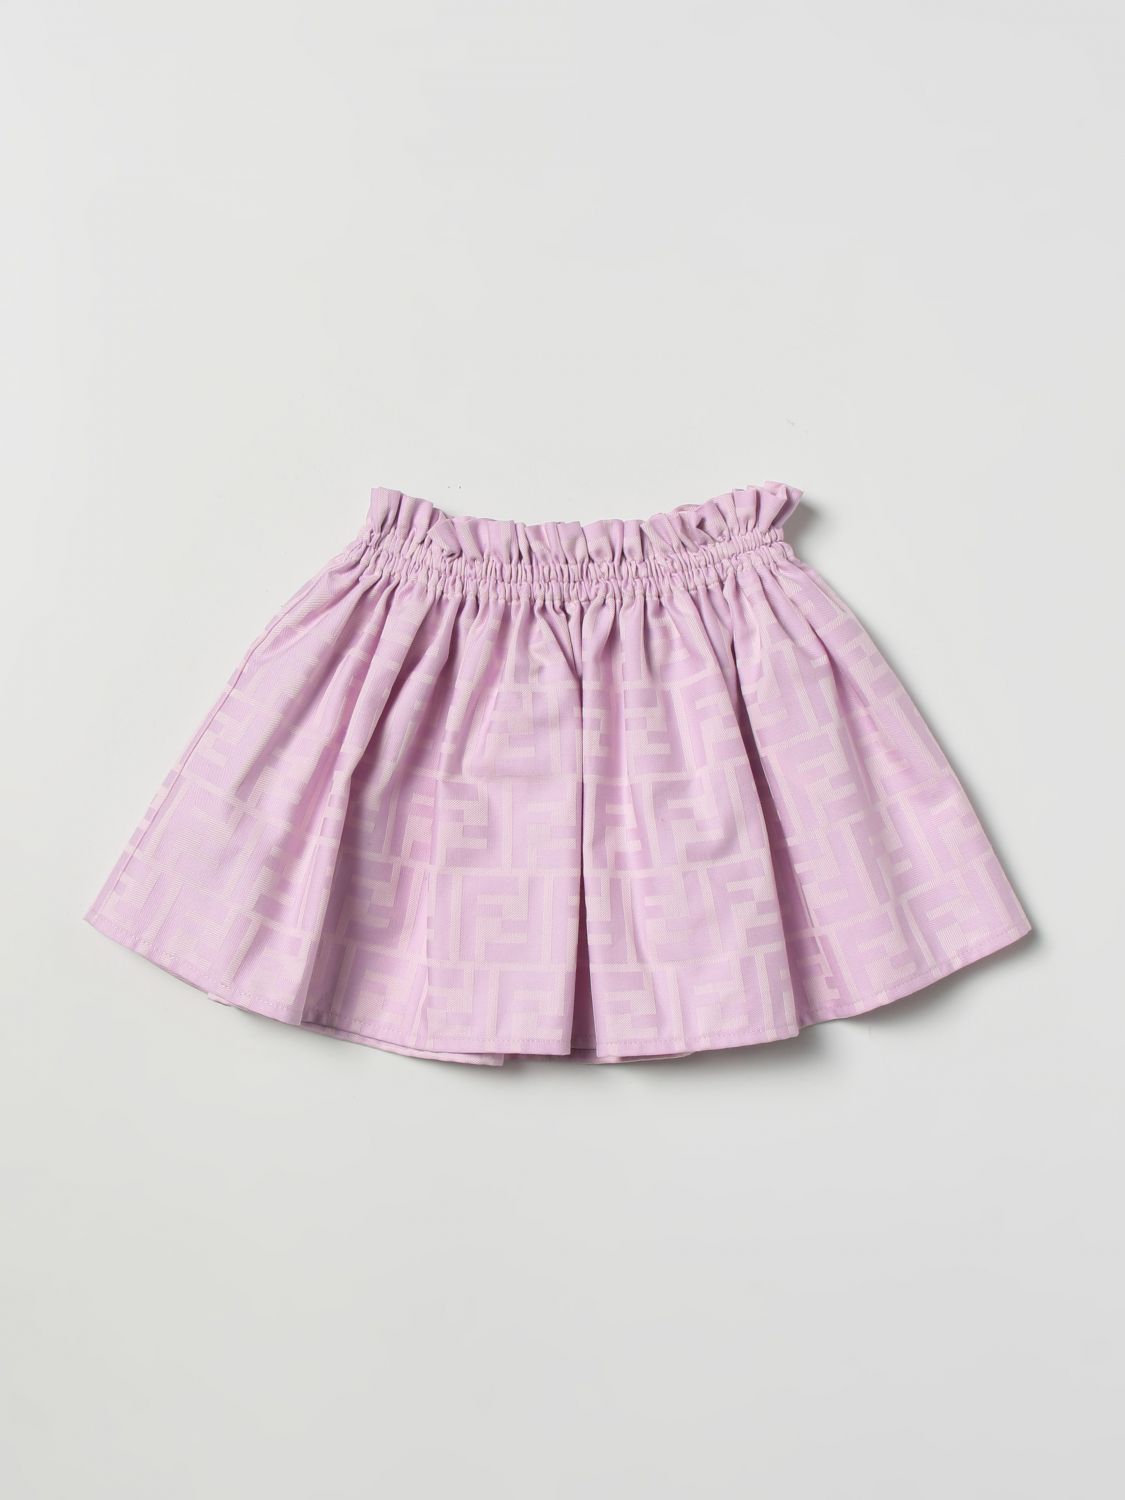 FENDI KIDS: skirt for baby - Pink | Fendi Kids skirt BFE024ALO6 online ...